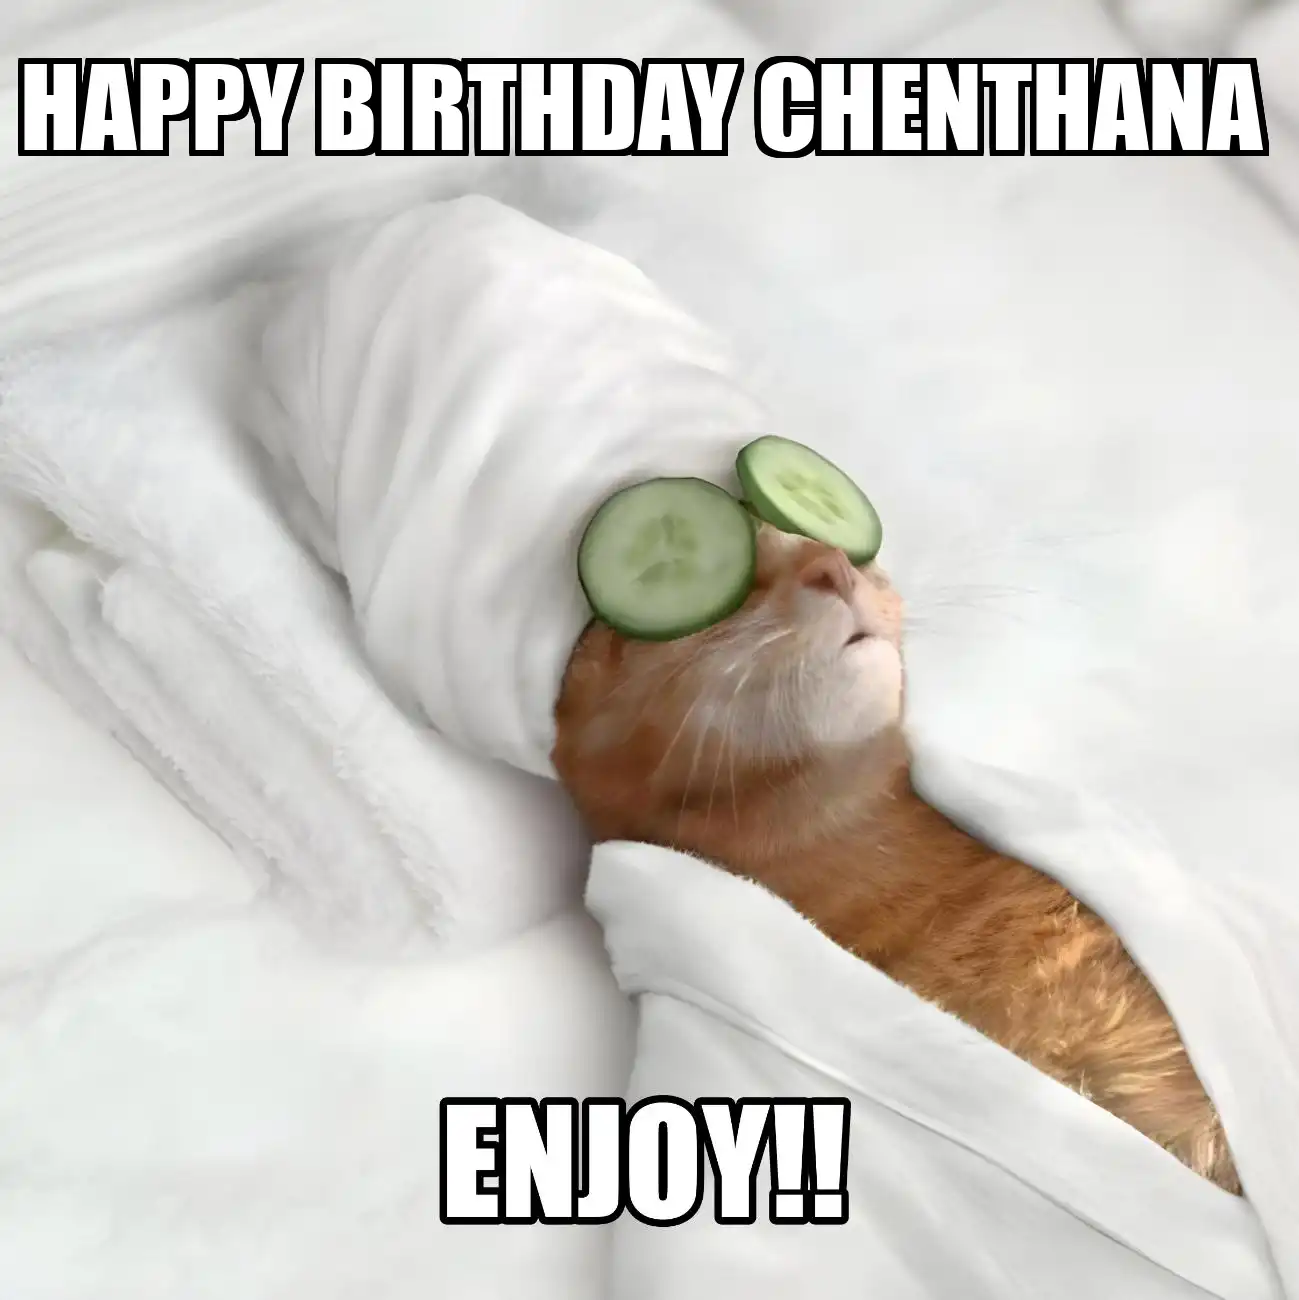 Happy Birthday Chenthana Enjoy Cat Meme